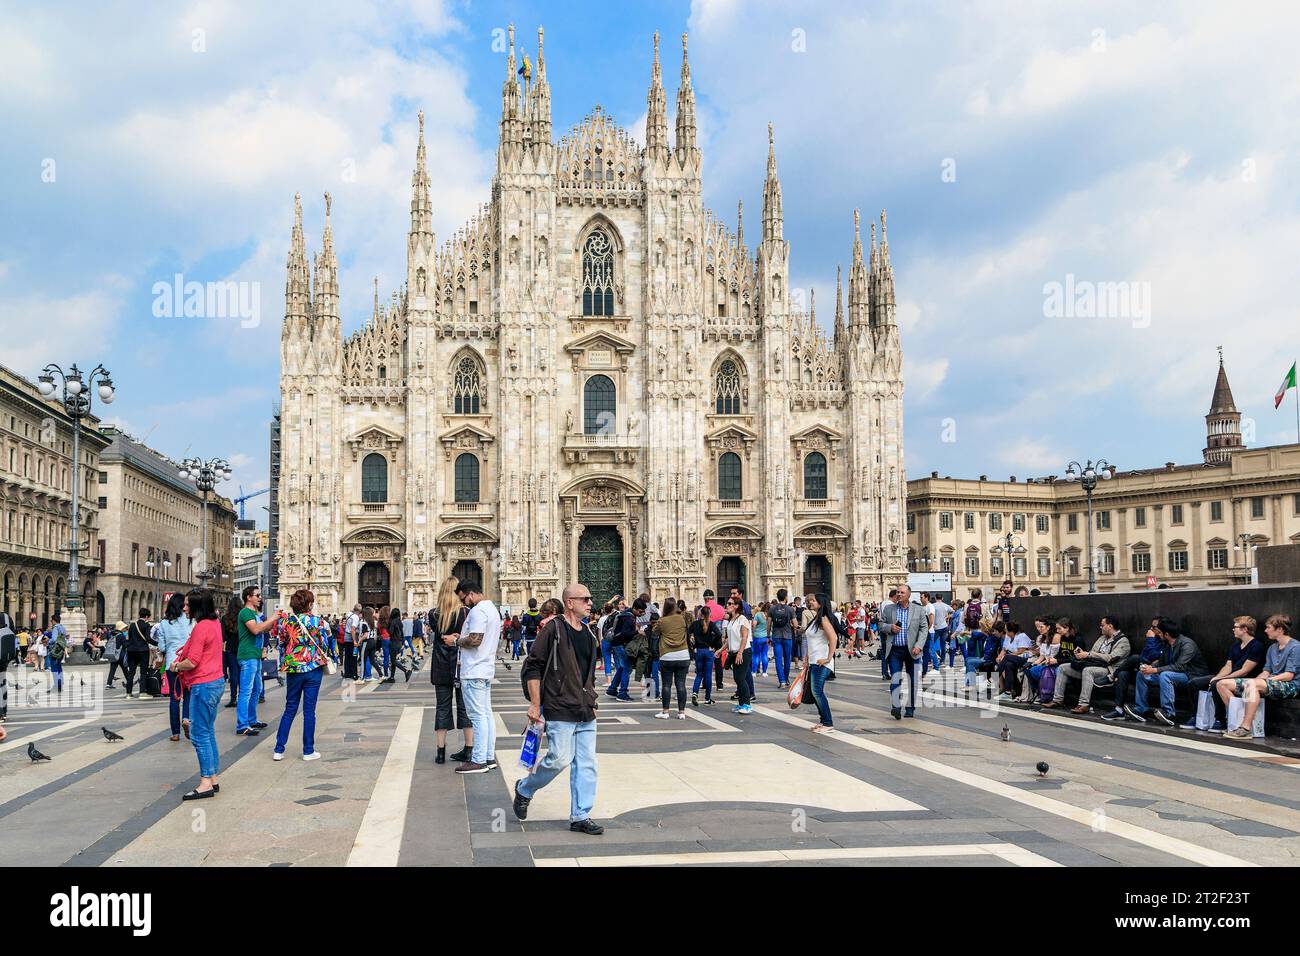 MILAN, ITALIE - 10 MAI 2018 : c'est la cathédrale de la Nativité de la Vierge Marie (Duomo). Banque D'Images